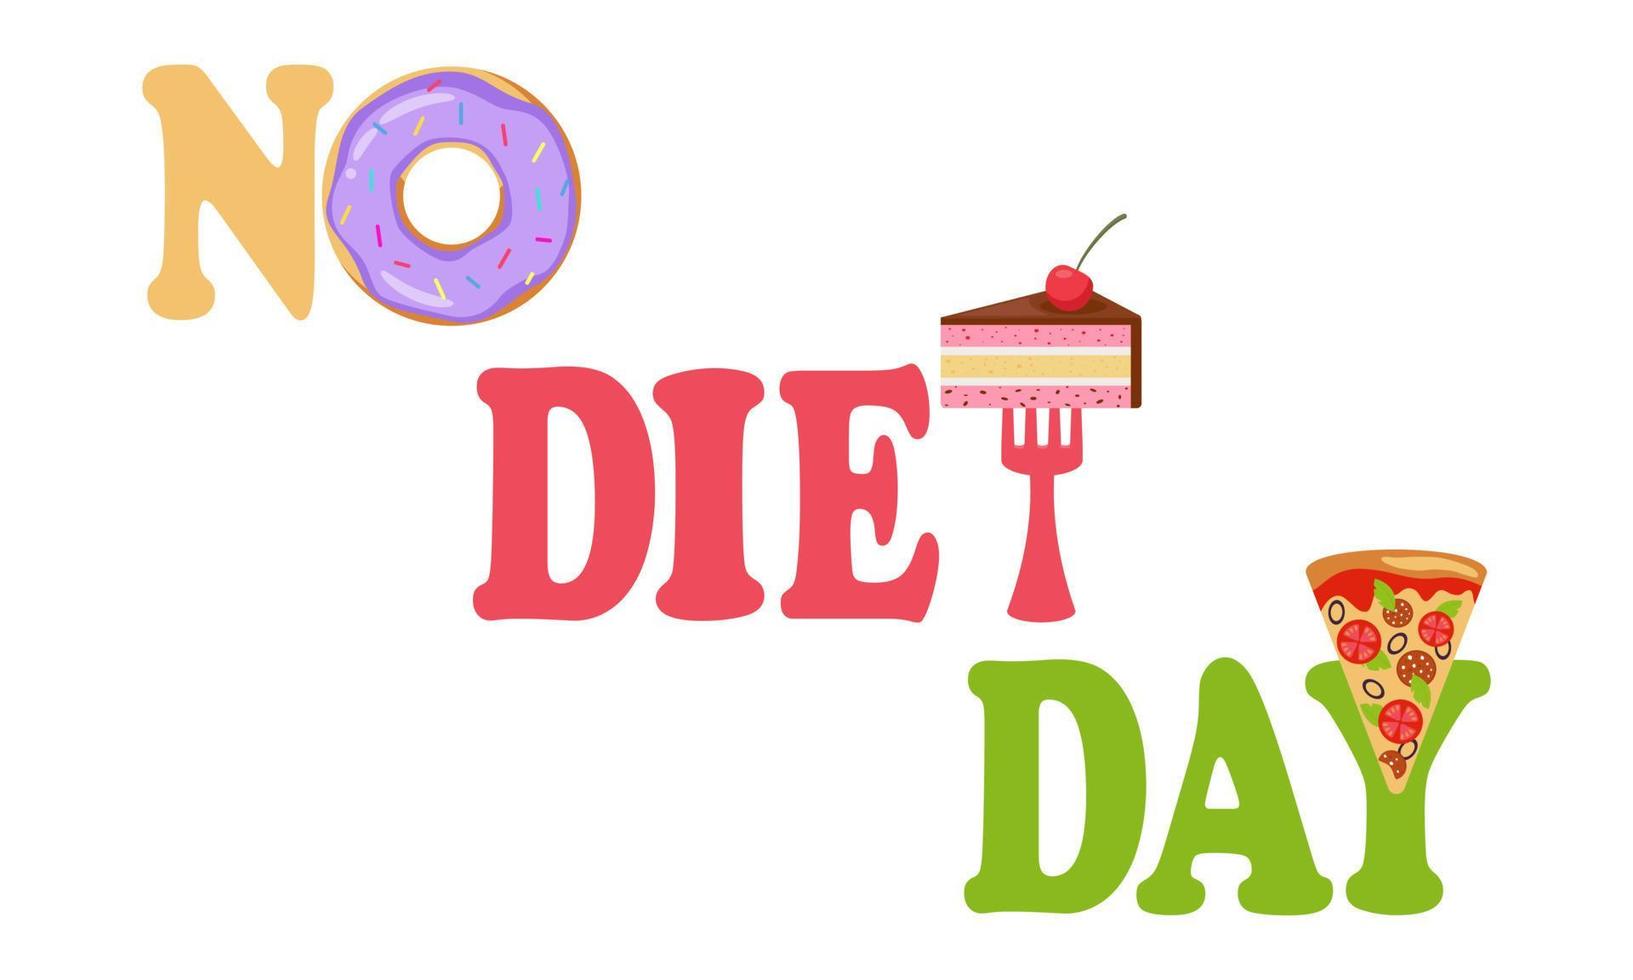 día internacional sin dieta. delicioso donut, tenedor con trozo de pastel, pizza y letras coloridas que componen la inscripción sin día de dieta, aislado, fondo blanco. vector